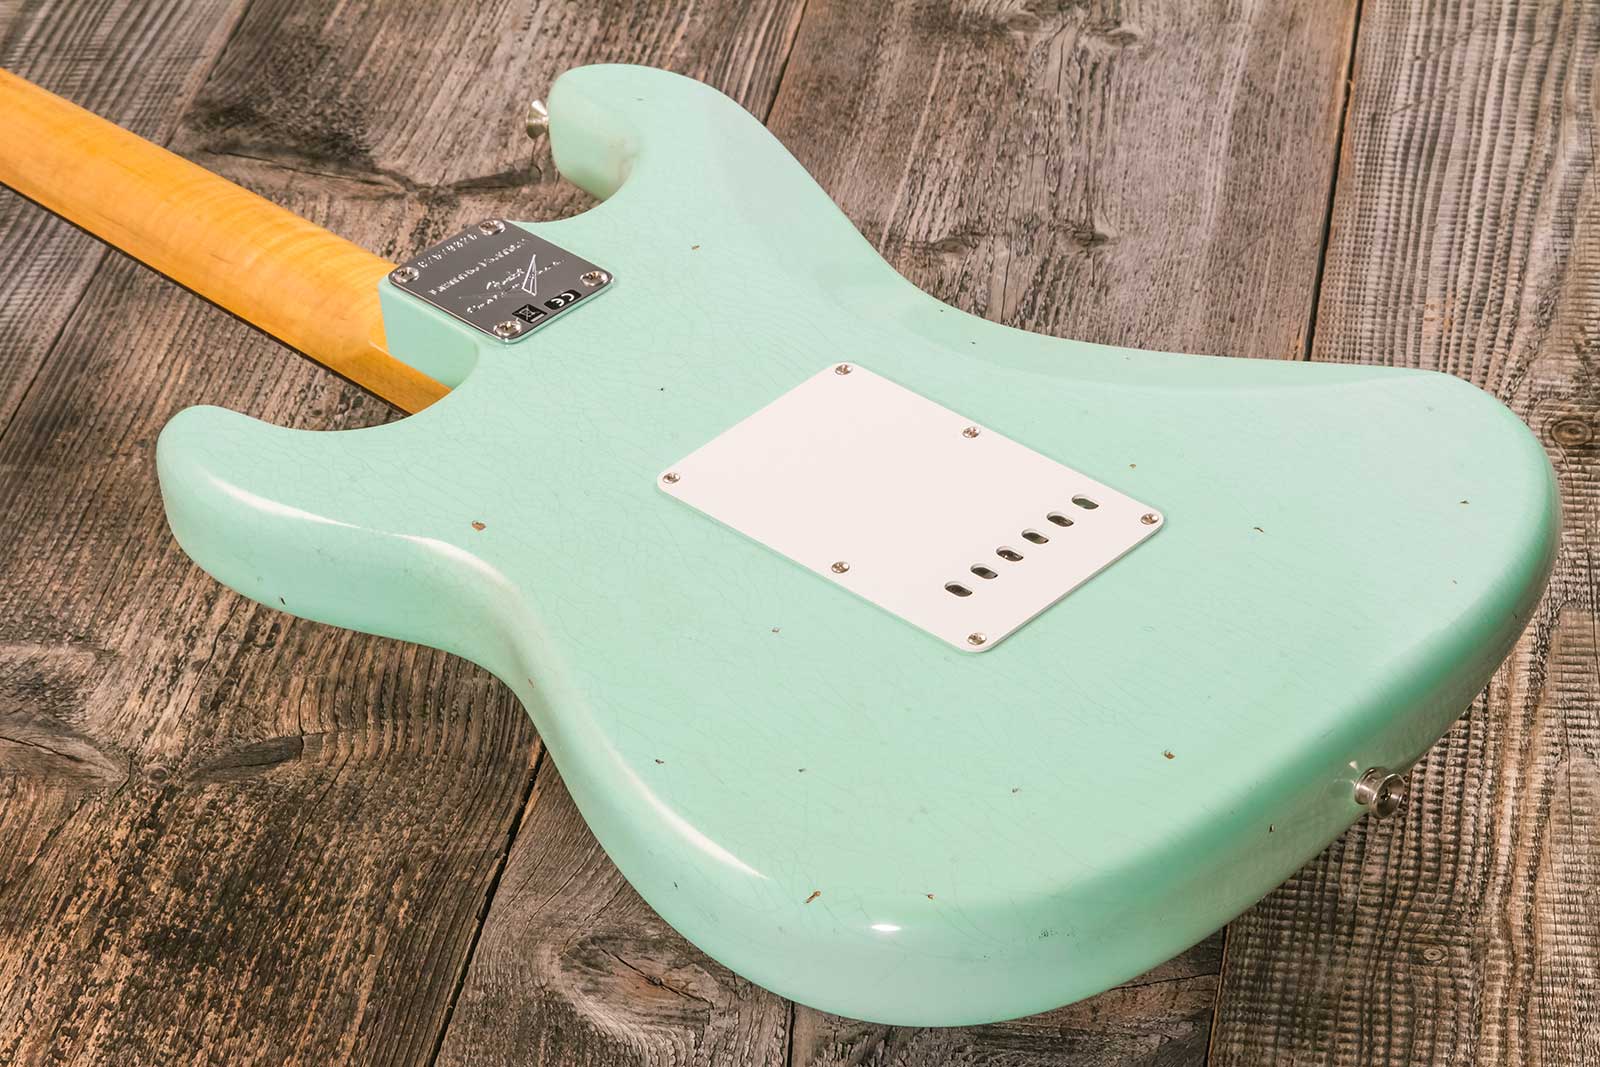 Fender Custom Shop Strat 1964 3s Trem Rw #cz579326 - Journey Man Relic Aged Surf Green - Elektrische gitaar in Str-vorm - Variation 7